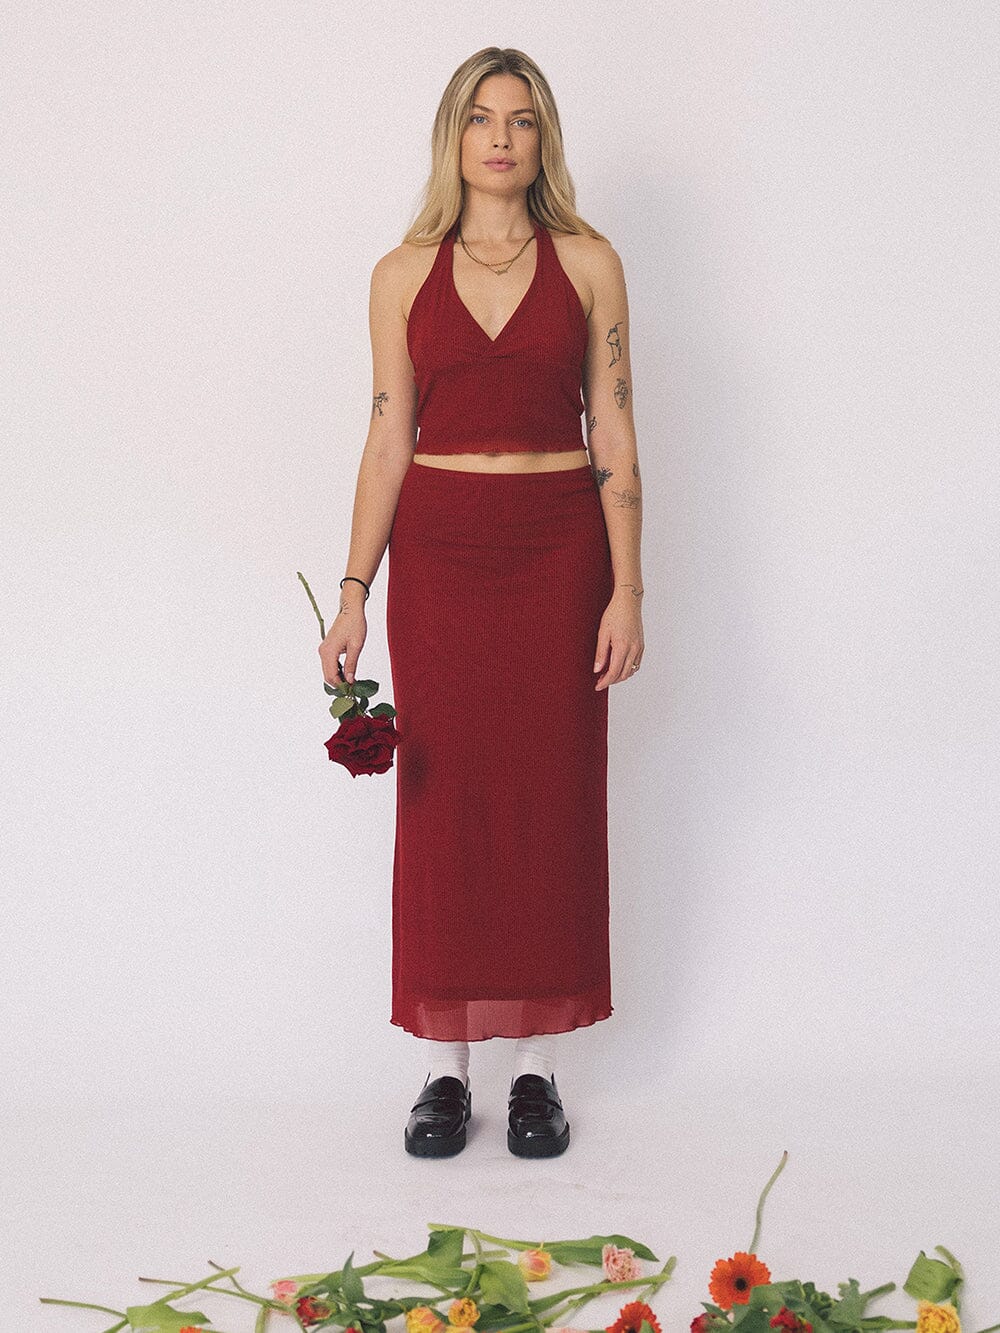 Levitation Mesh Skirt - Red Dahlia